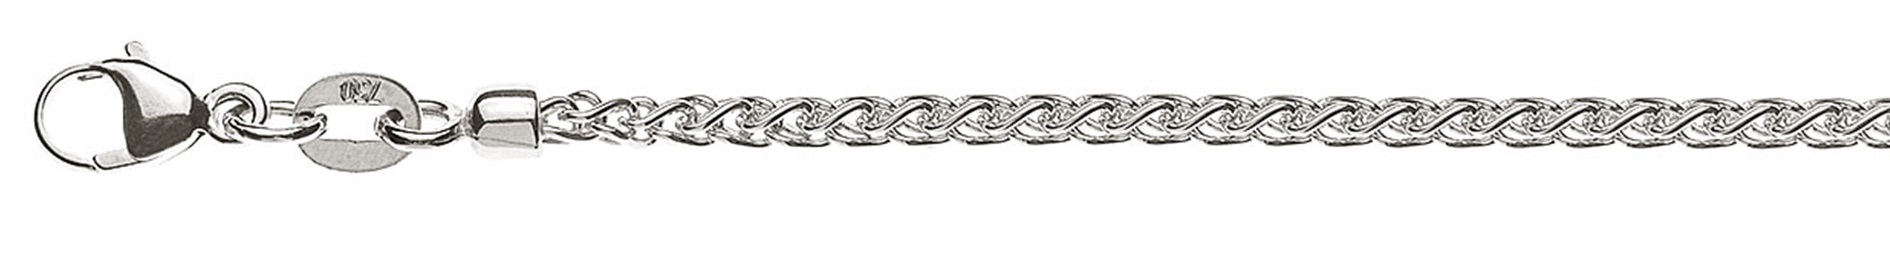 AURONOS Prestige Halskette Weissgold 18K Zopfkette 50cm 2.15mm